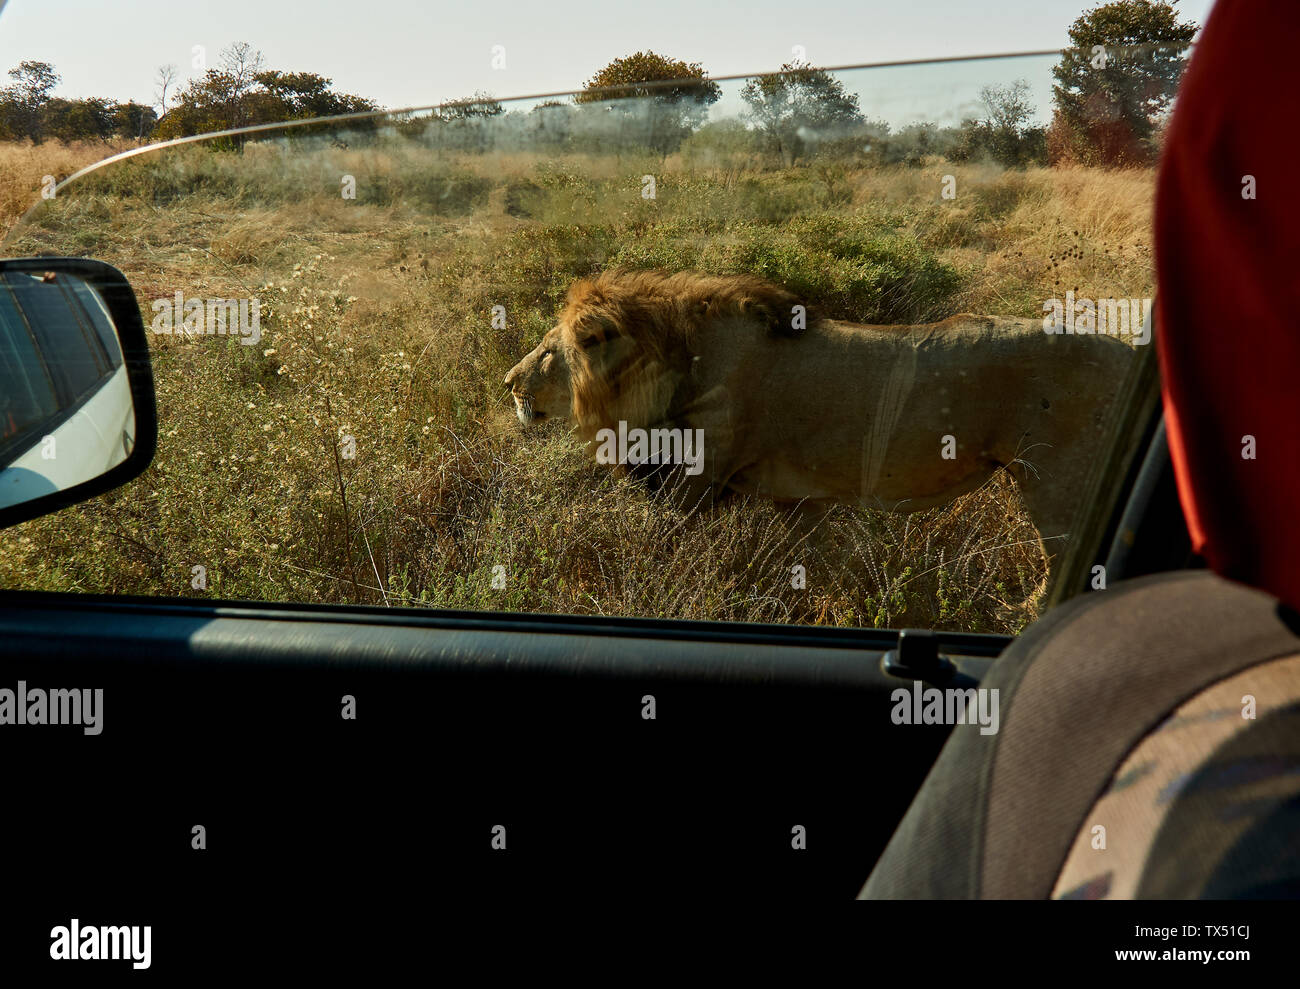 África, Botswana, Ihaha, el Parque Nacional Chobe, león macho caminando cerca del coche Foto de stock